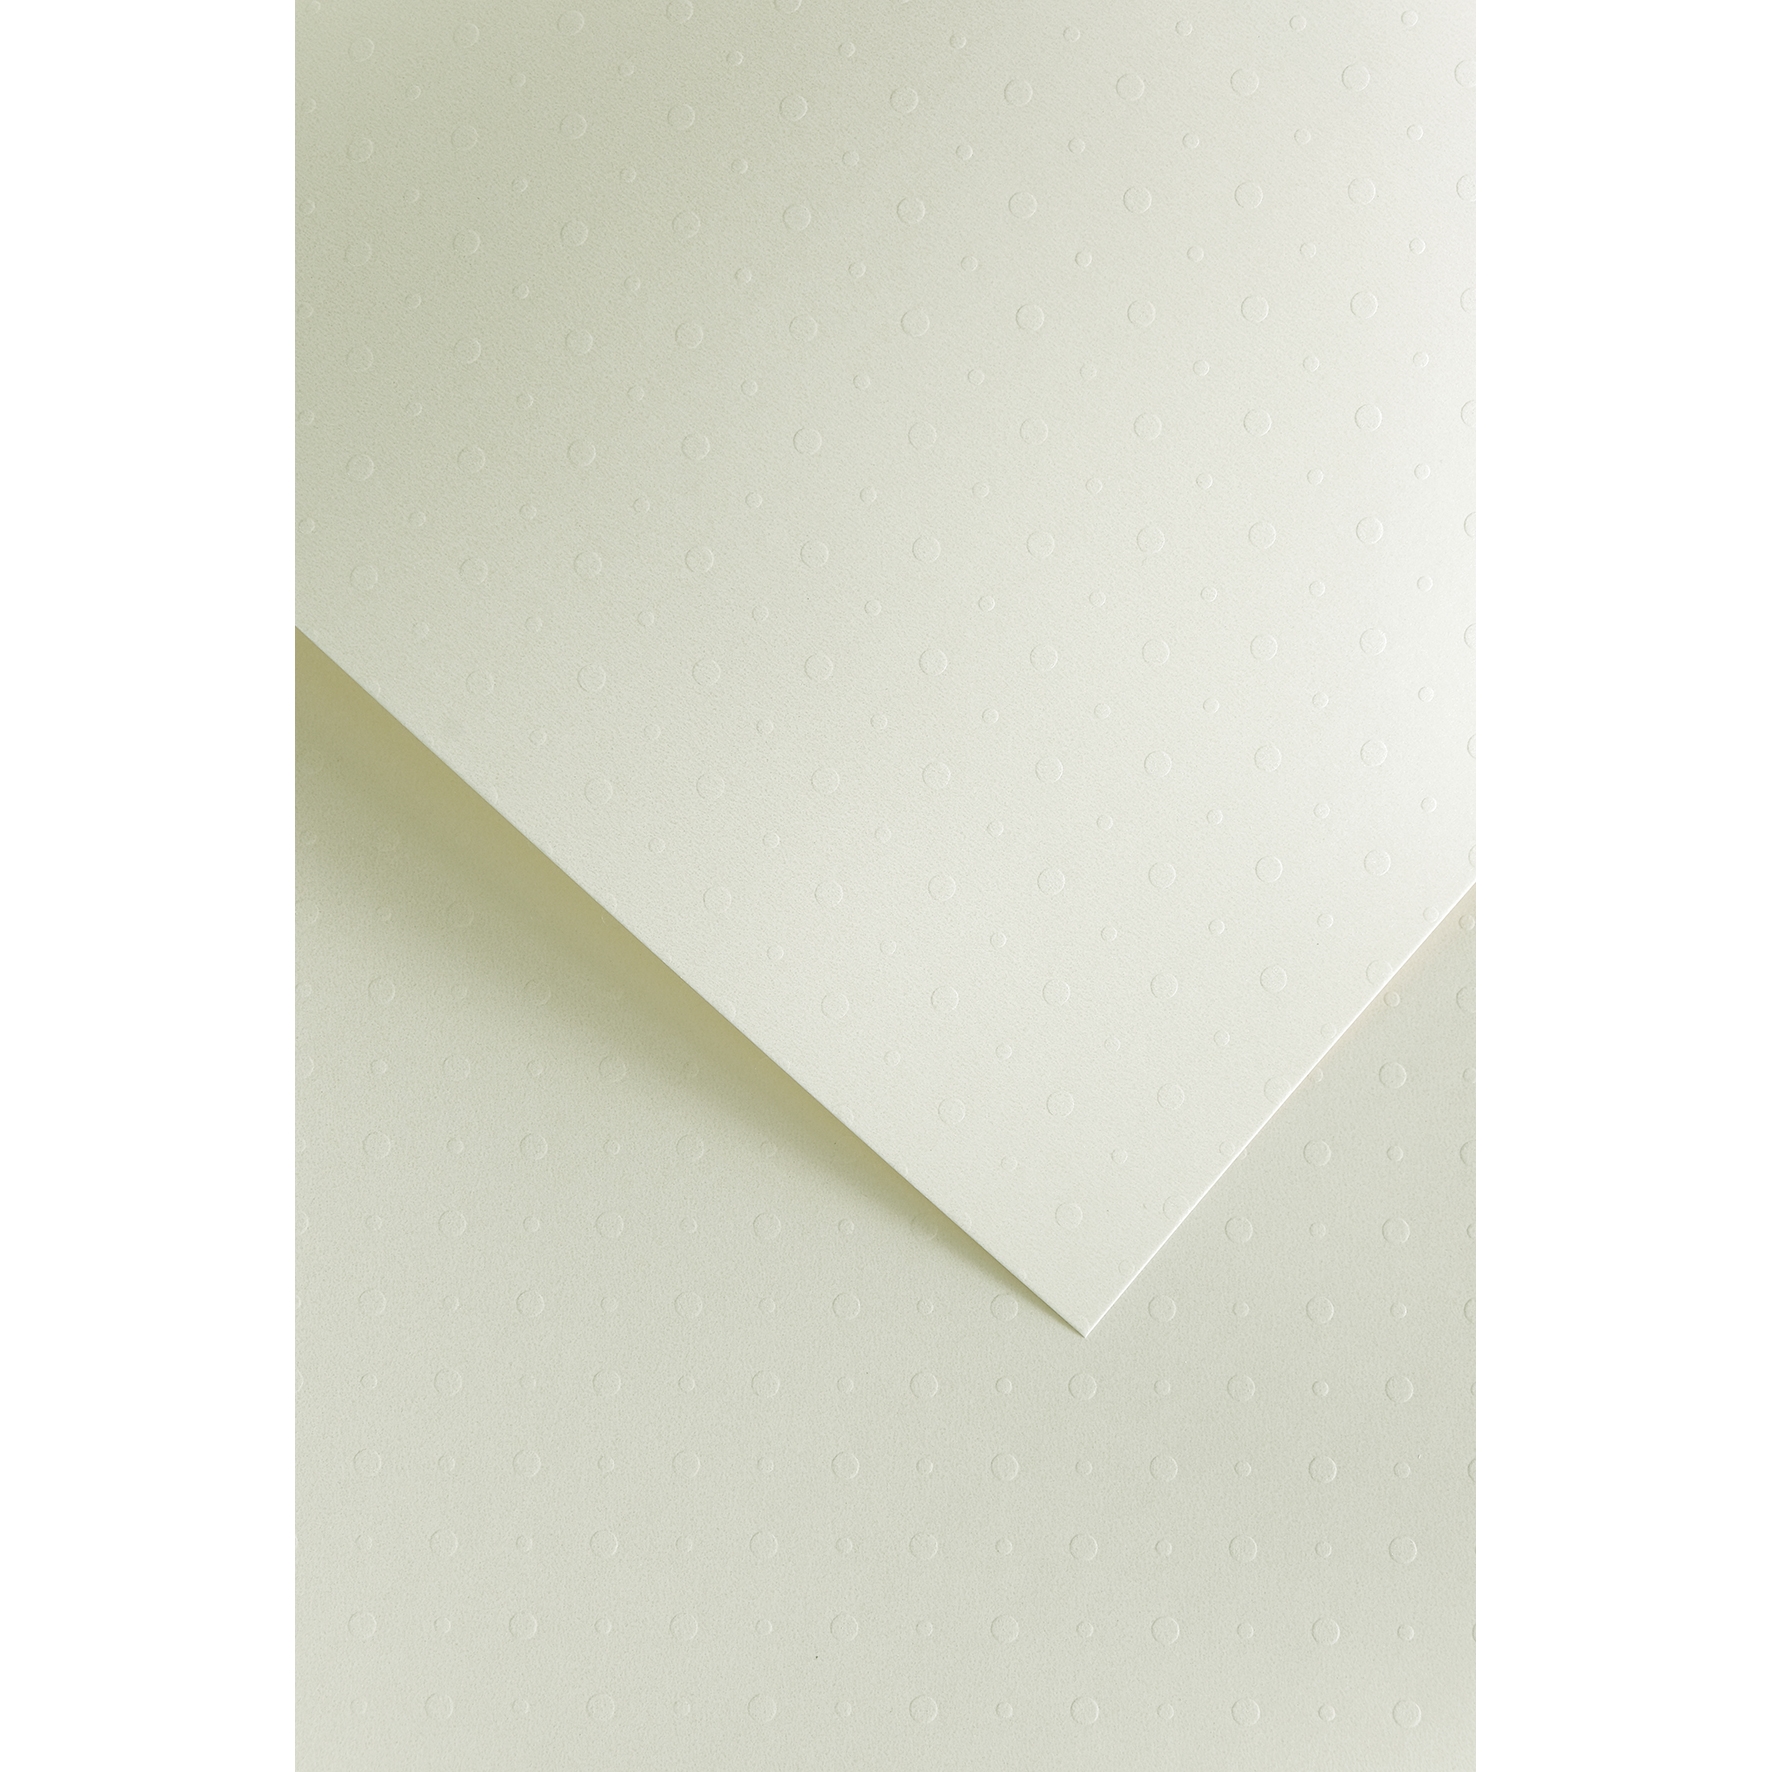 Ozdobný papír Dots bílá 230g, 20ks